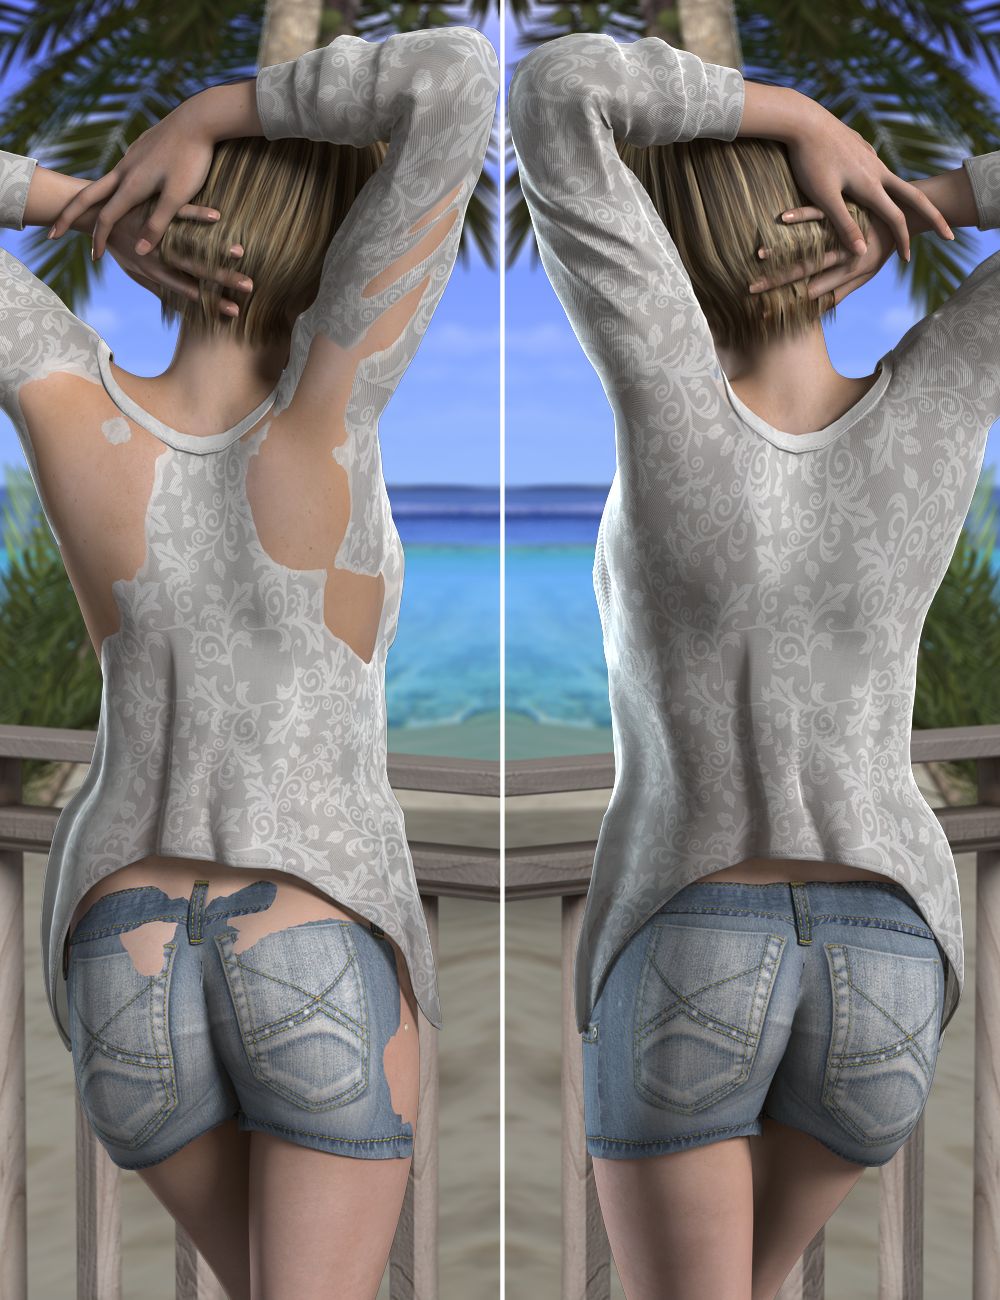 Poke-Away2! for Genesis 2 Female(s) by: xenic101, 3D Models by Daz 3D